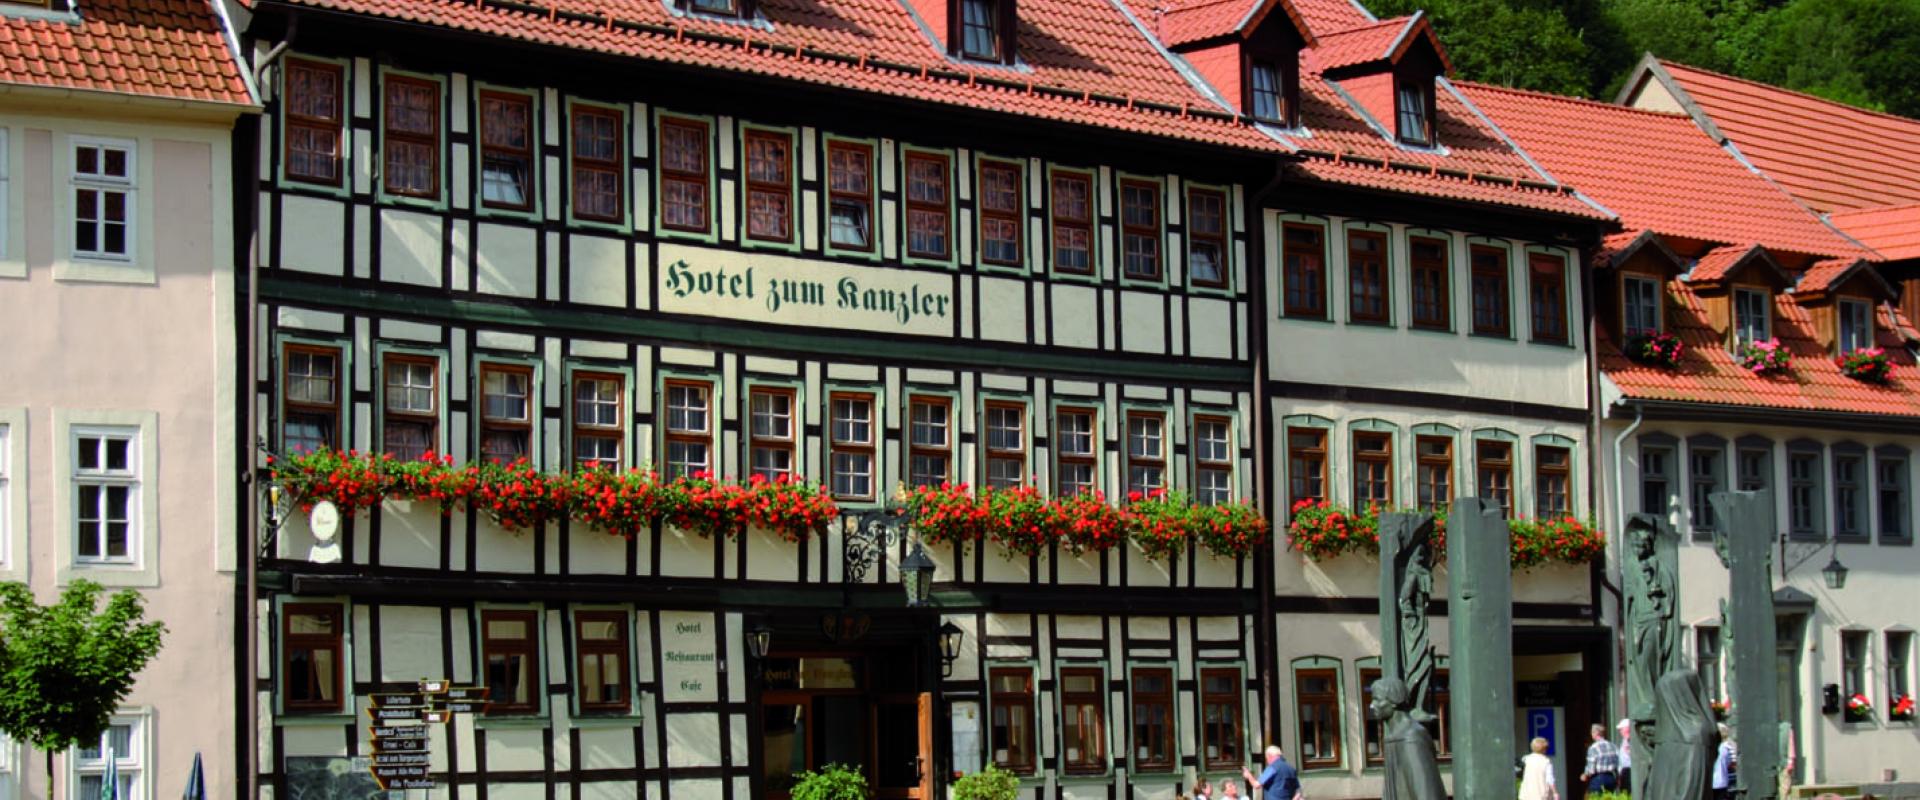 13645 Biker Hotel Zum Kanzler im Harz 2.JPG